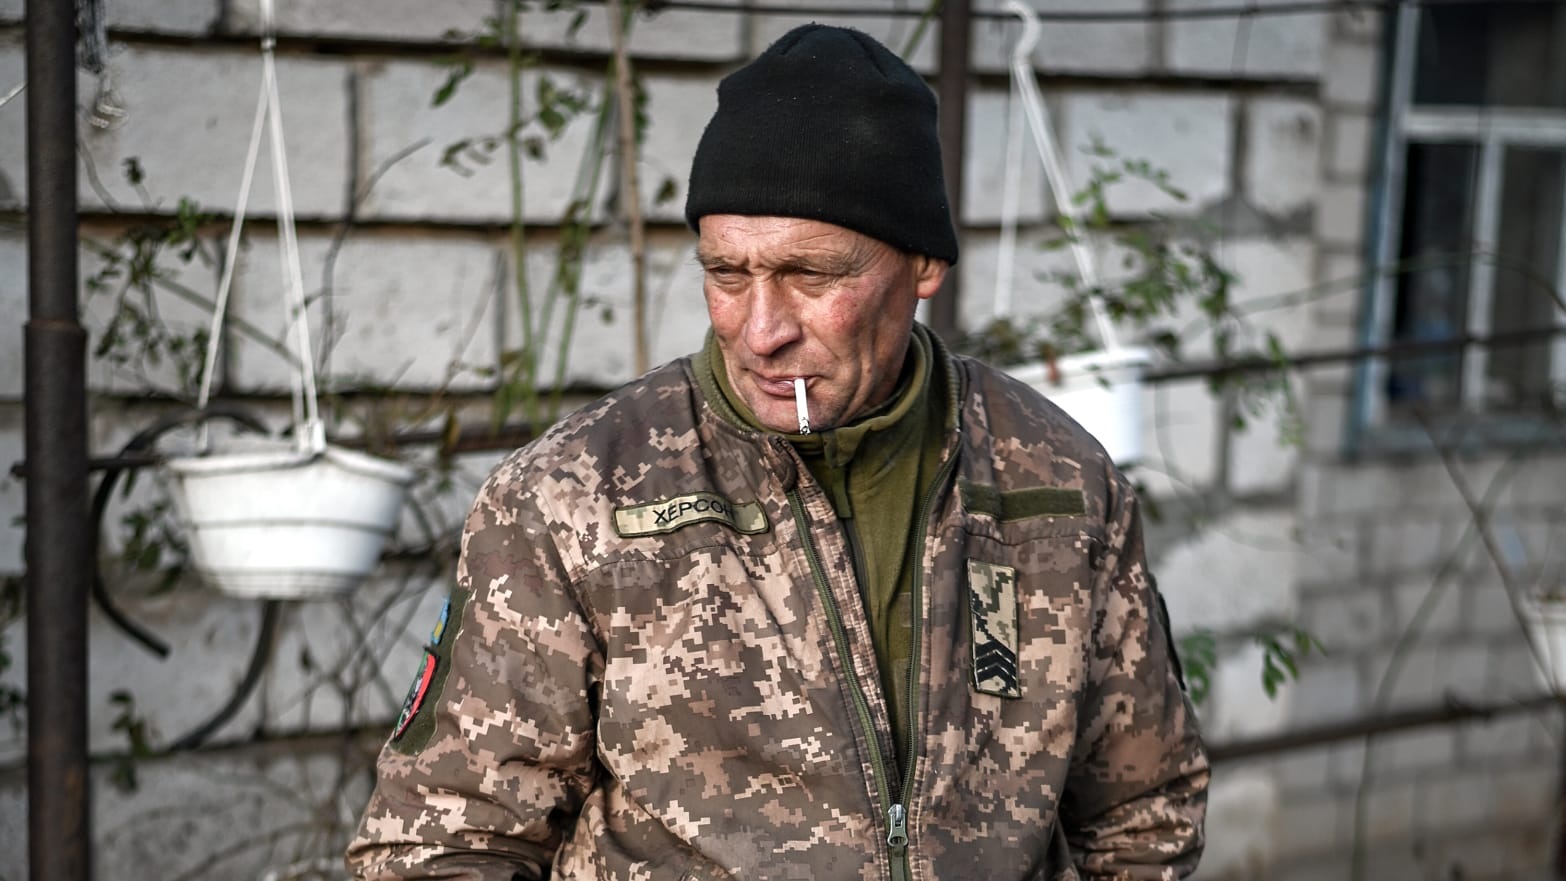 Đội quân 'tóc bạc' Ukraine vật lộn trấn giữ chiến hào, chặn các cuộc tấn công dữ dội của Nga- Ảnh 1.